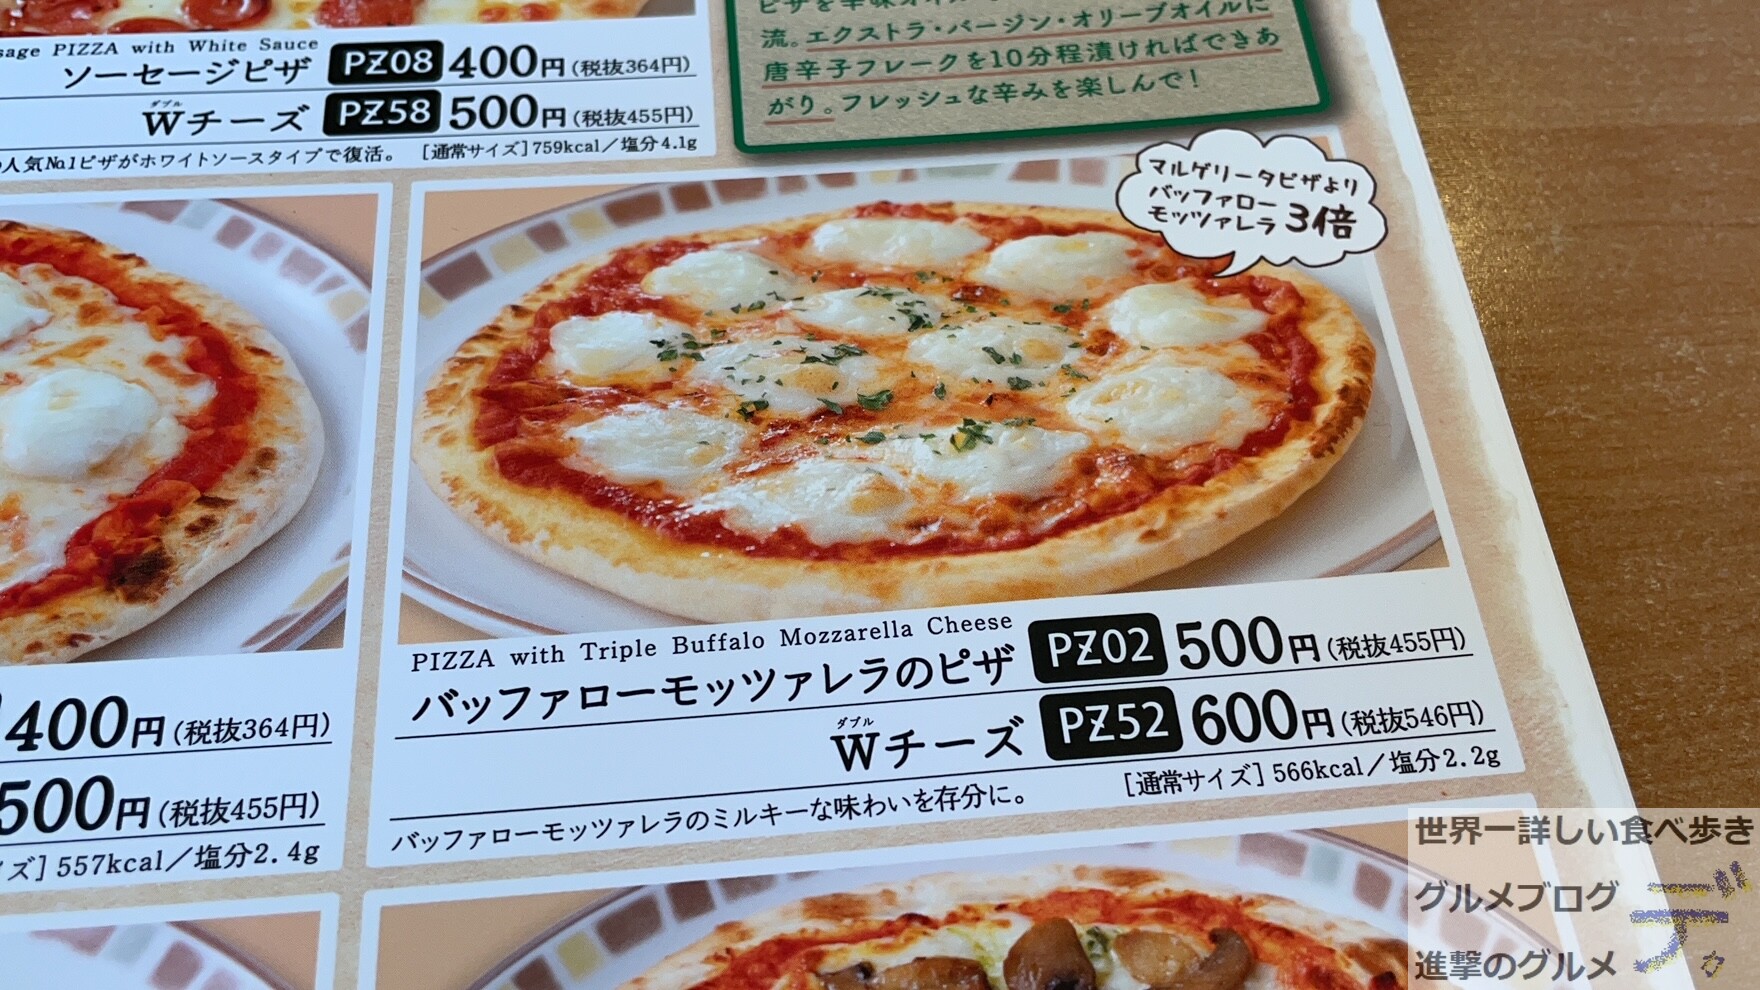 モッツァレラチーズが3倍 サイゼリヤのミルキーな人気ピザを実食 進撃のグルメ Yahoo Japan クリエイターズプログラム